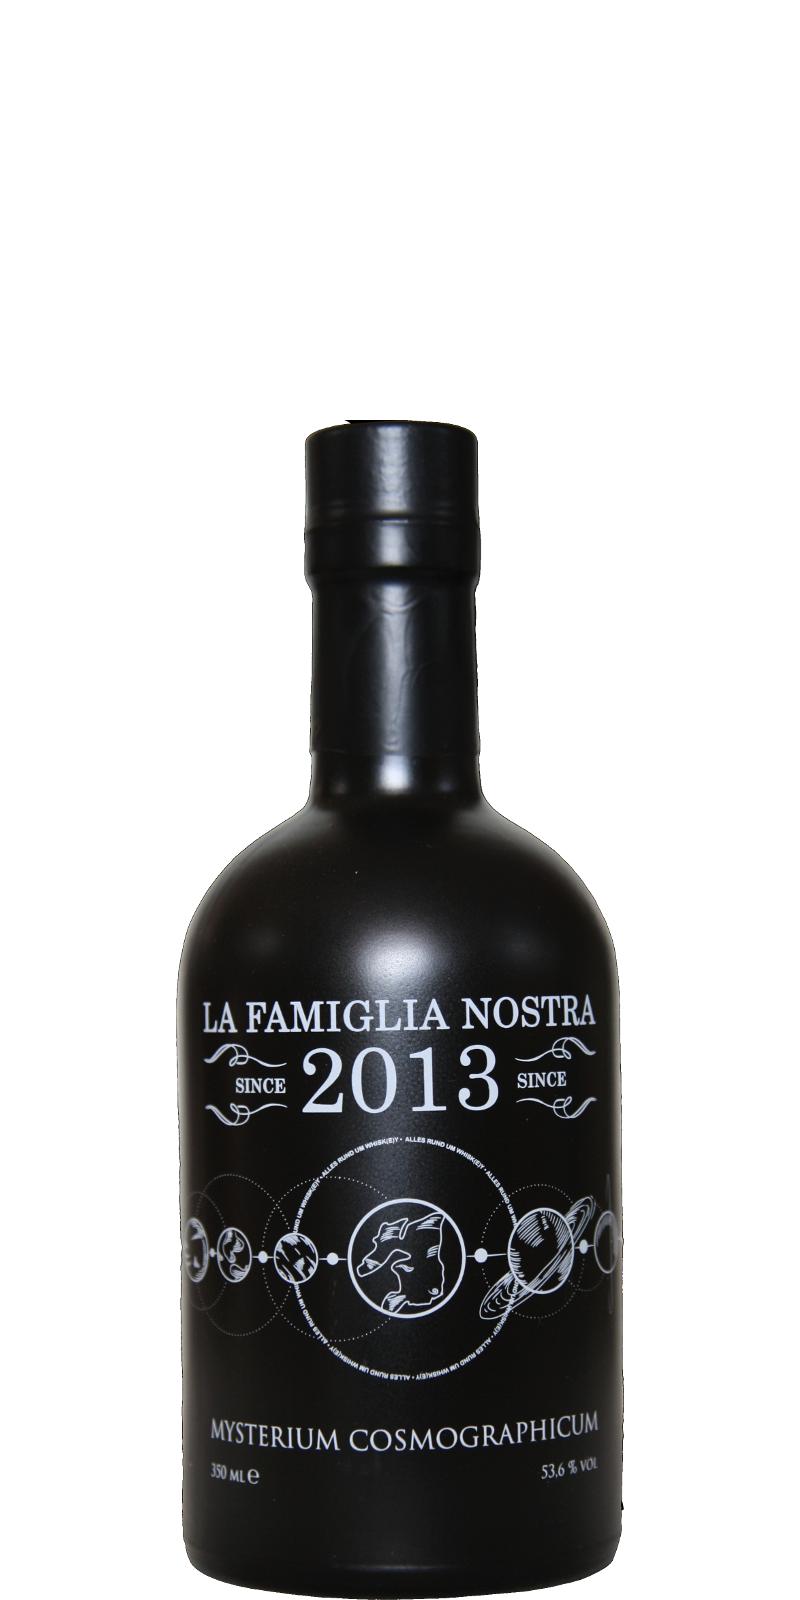 La Famiglia Nostra Mysterium Cosmographicum LFN 1st fill PX cask 53.6% 350ml